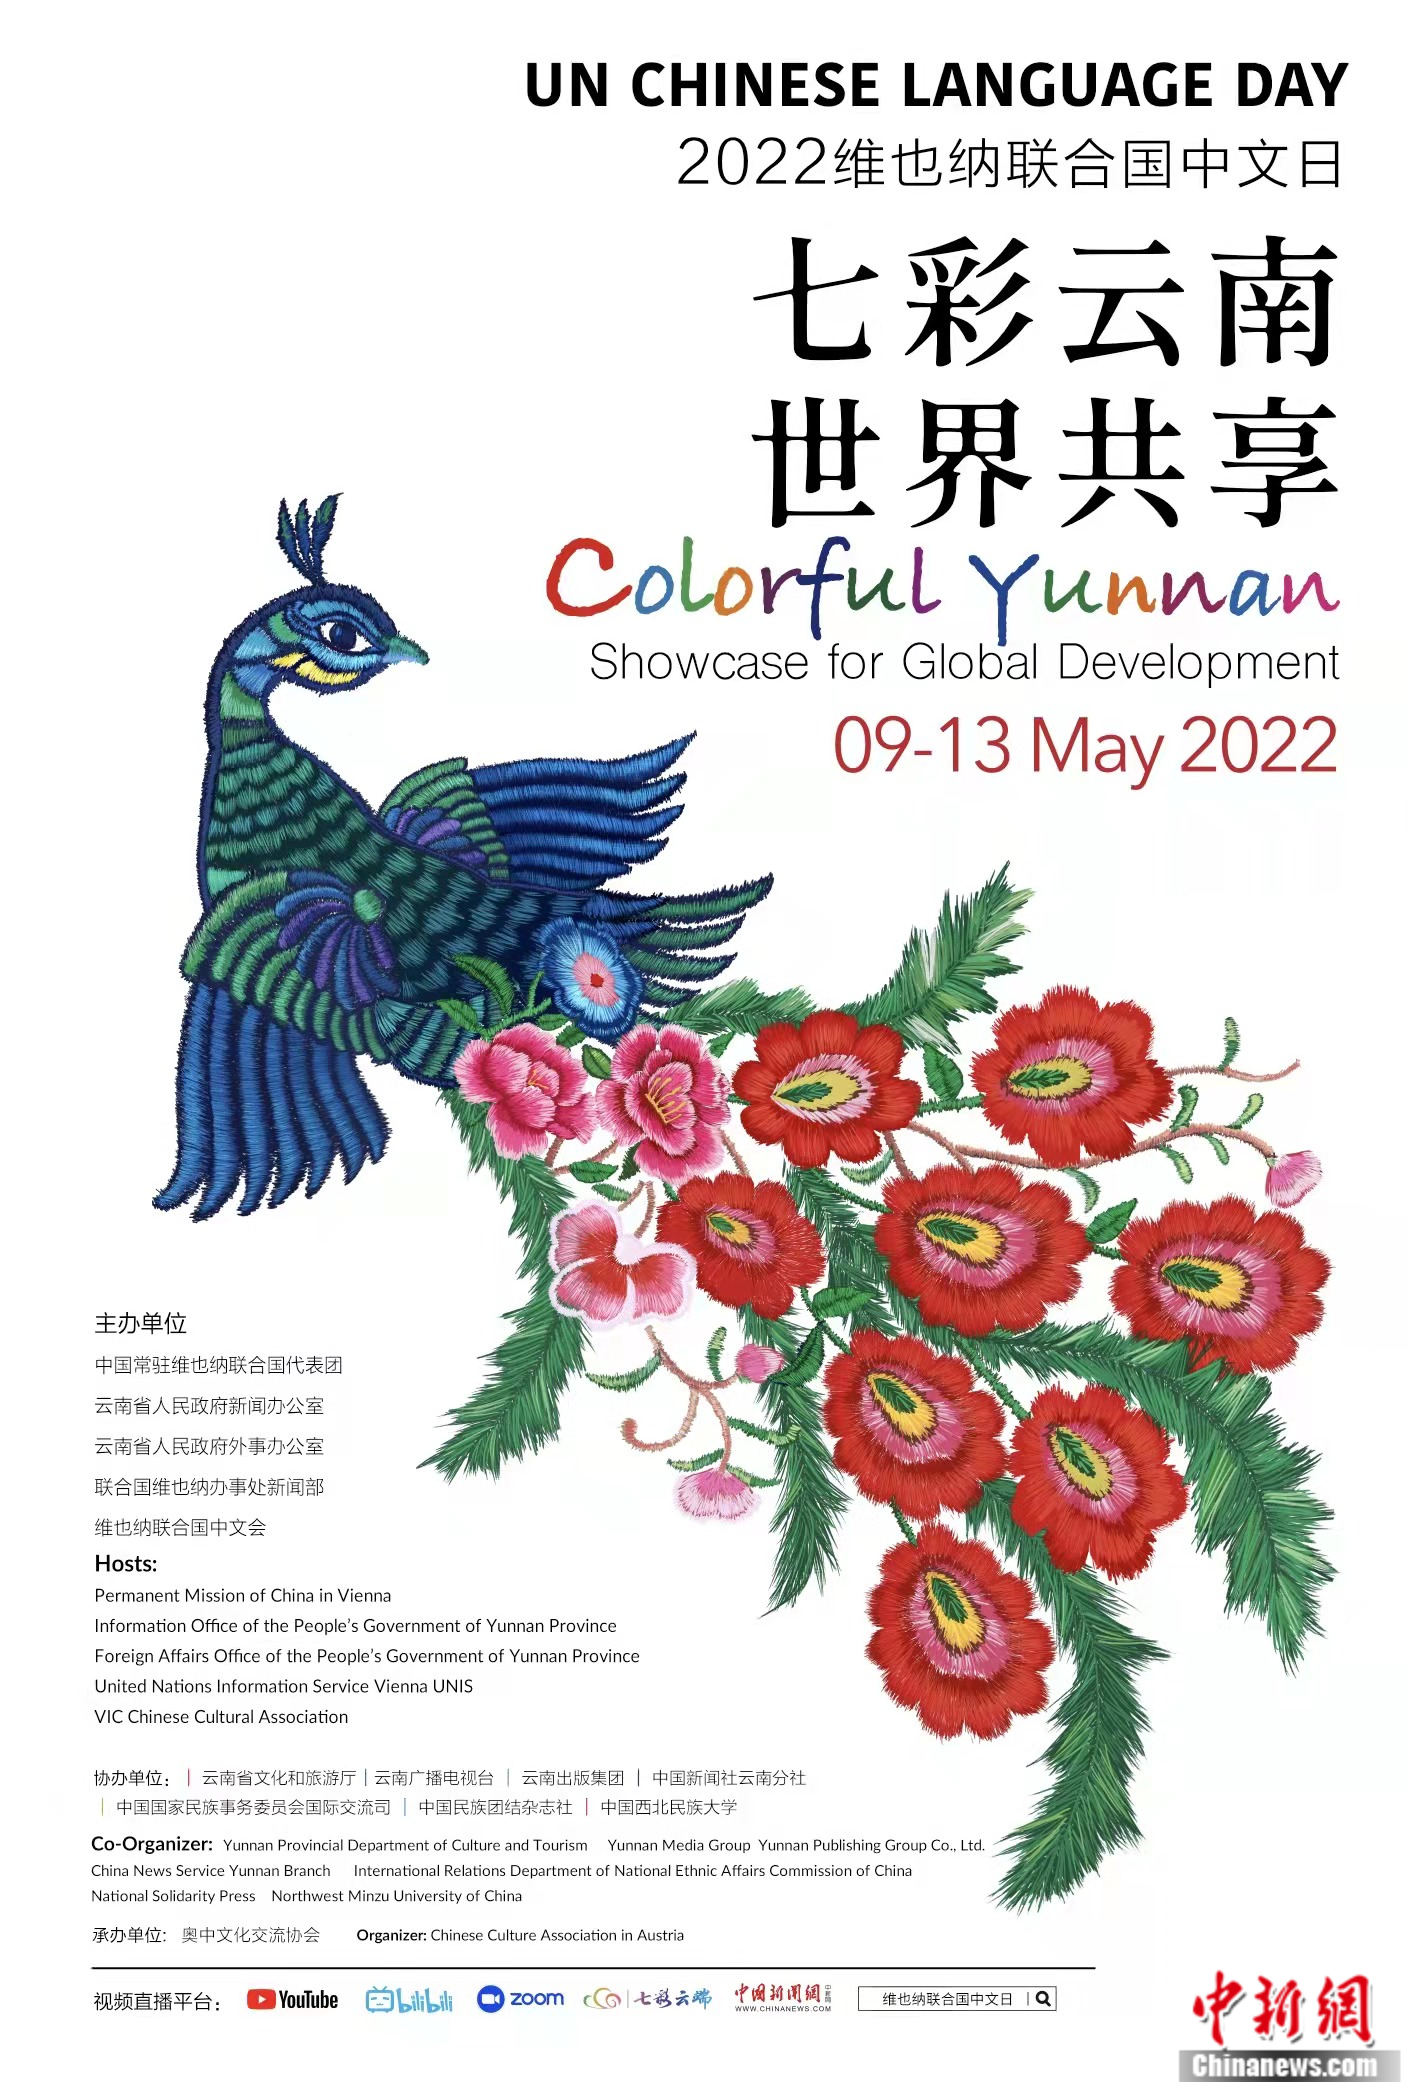 图为图片展海报。奥中文化交流协会供图